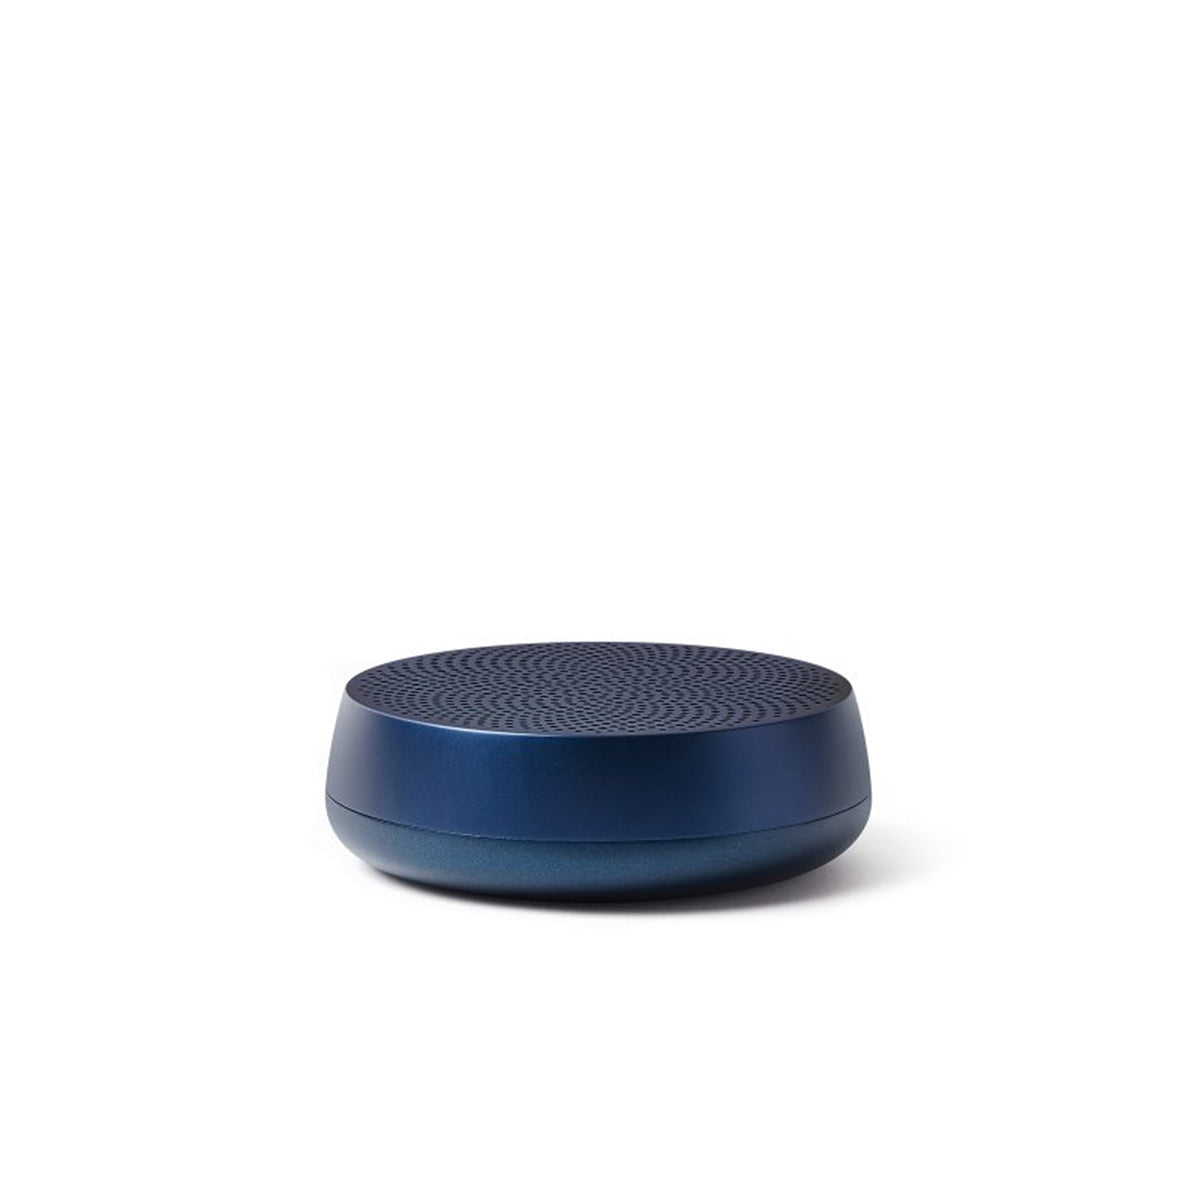 Lexon - Mino L Speaker Bluetooth® Blu Scuro - XLA121 - BLU/SCURO